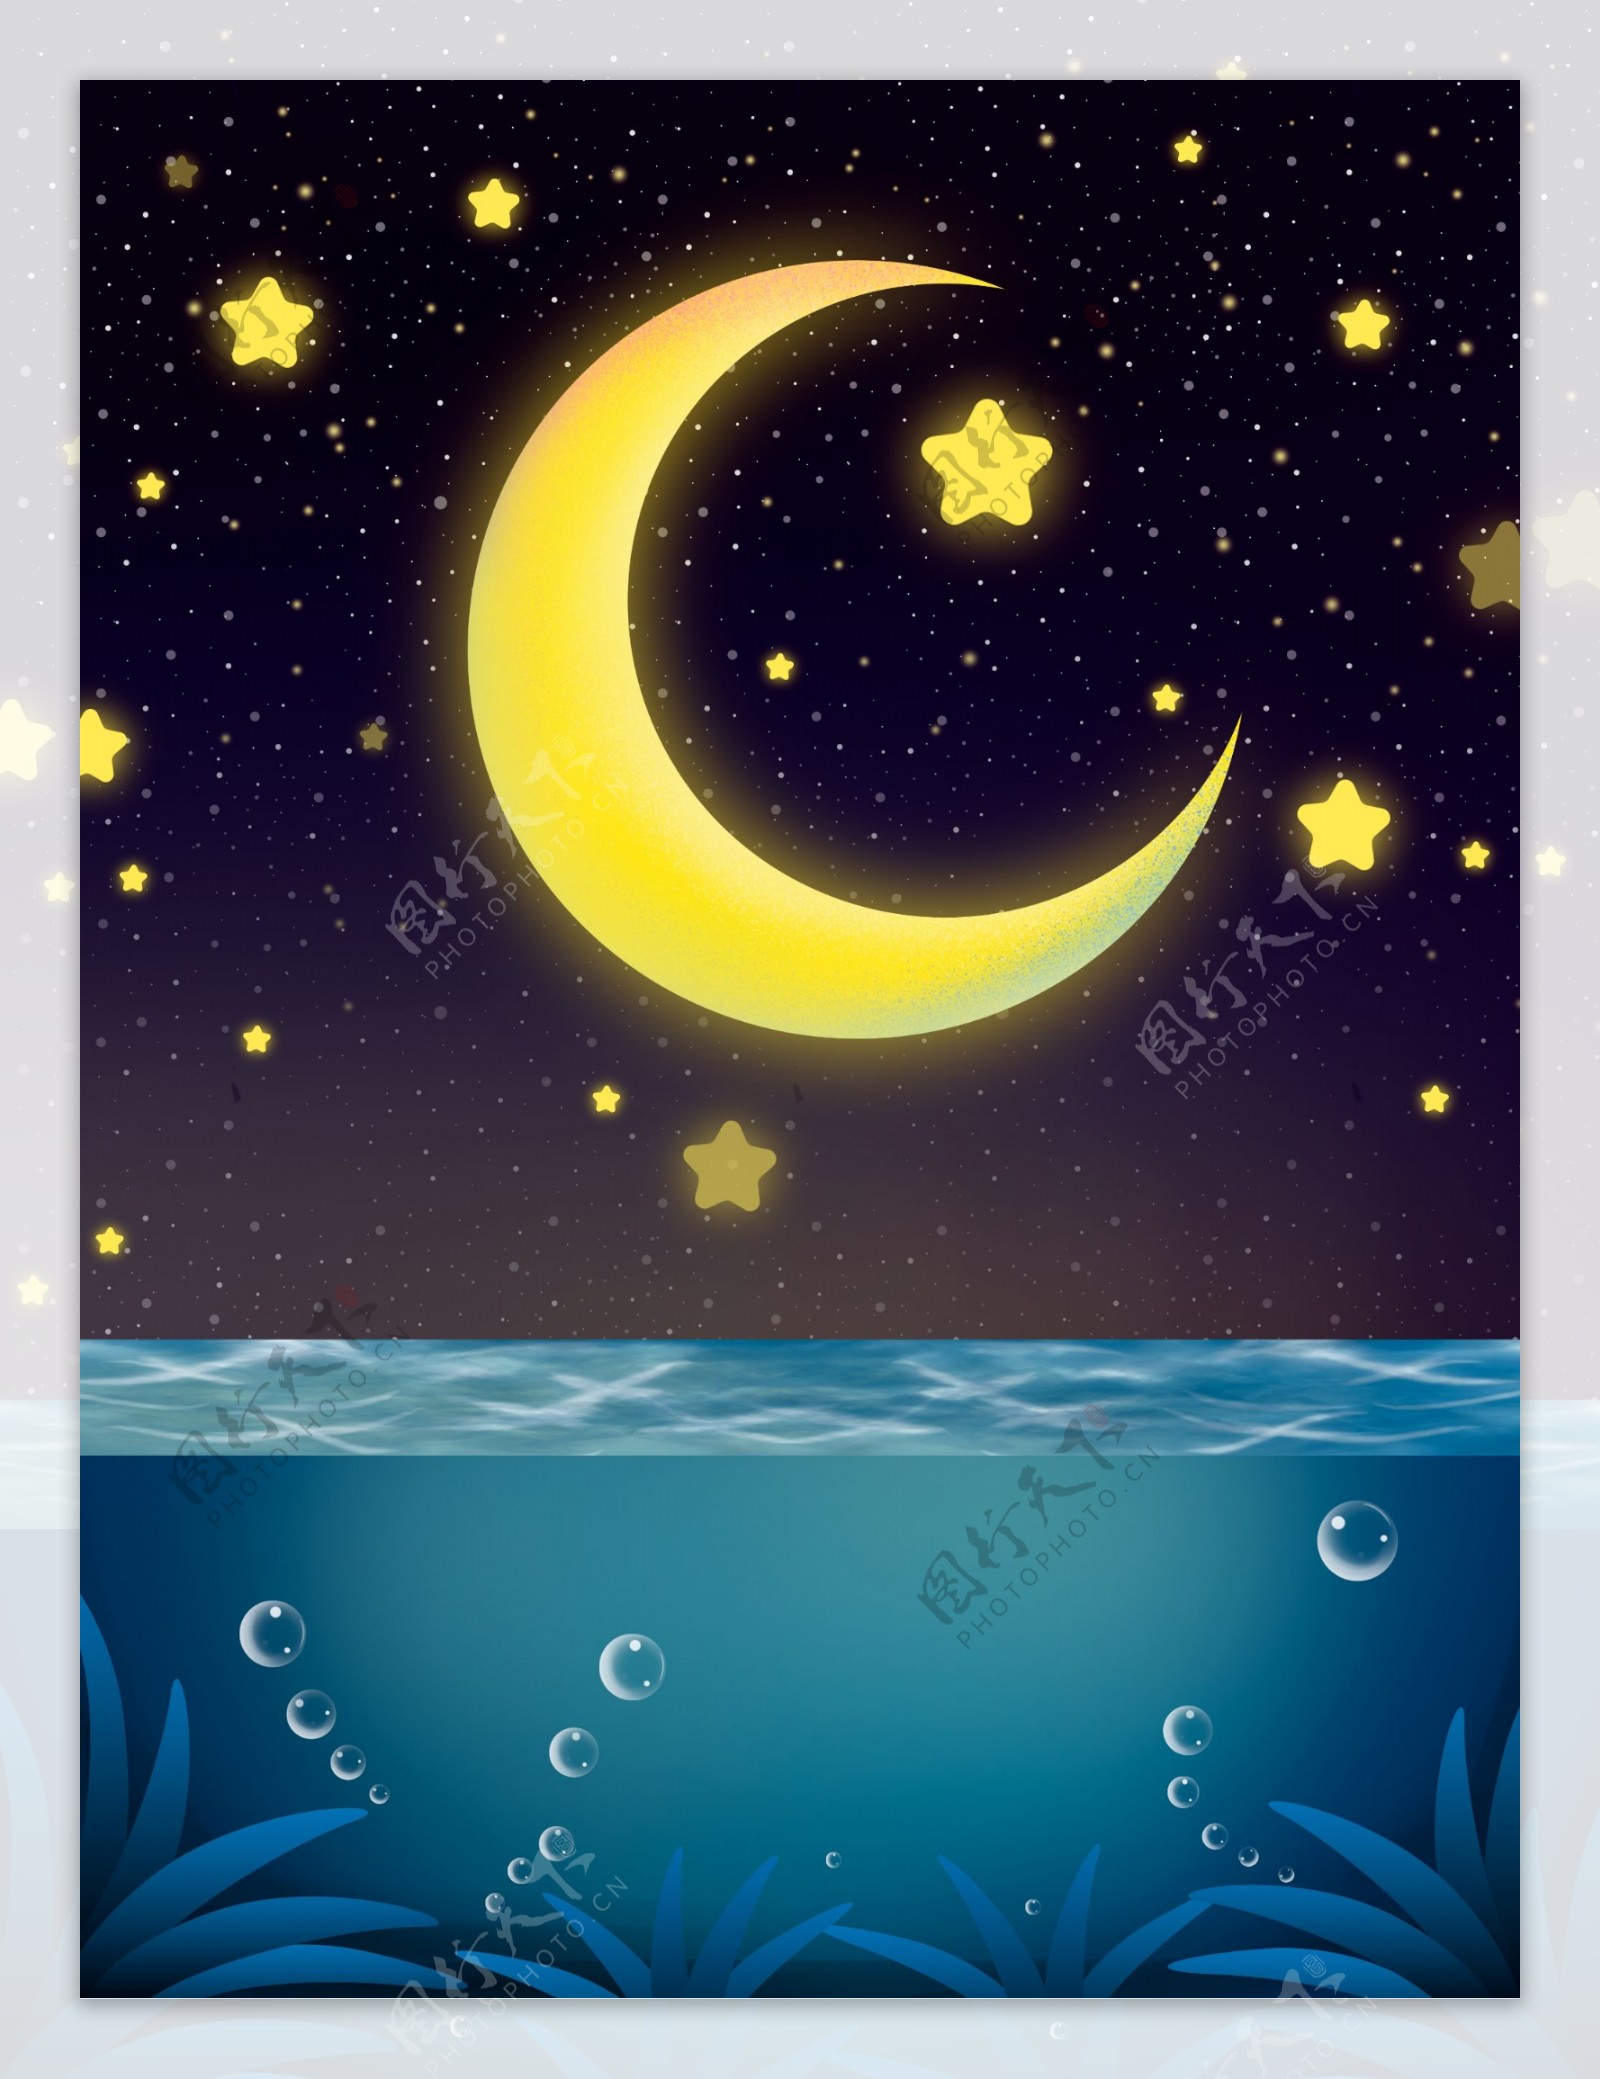 唯美海面星空晚安背景设计